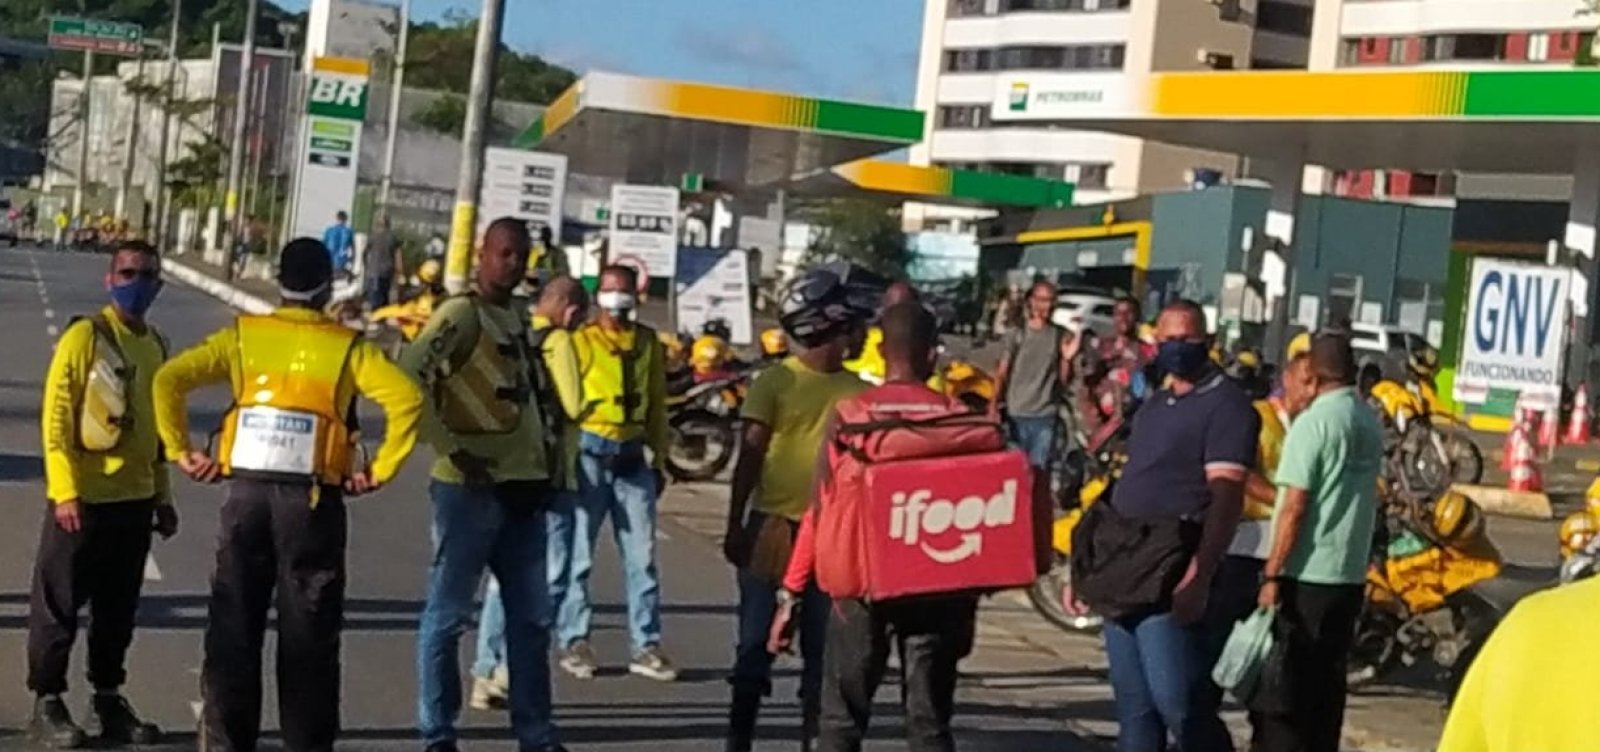  Mototaxistas fecham Posto Escola da Petrobras em protesto contra o preço da gasolina